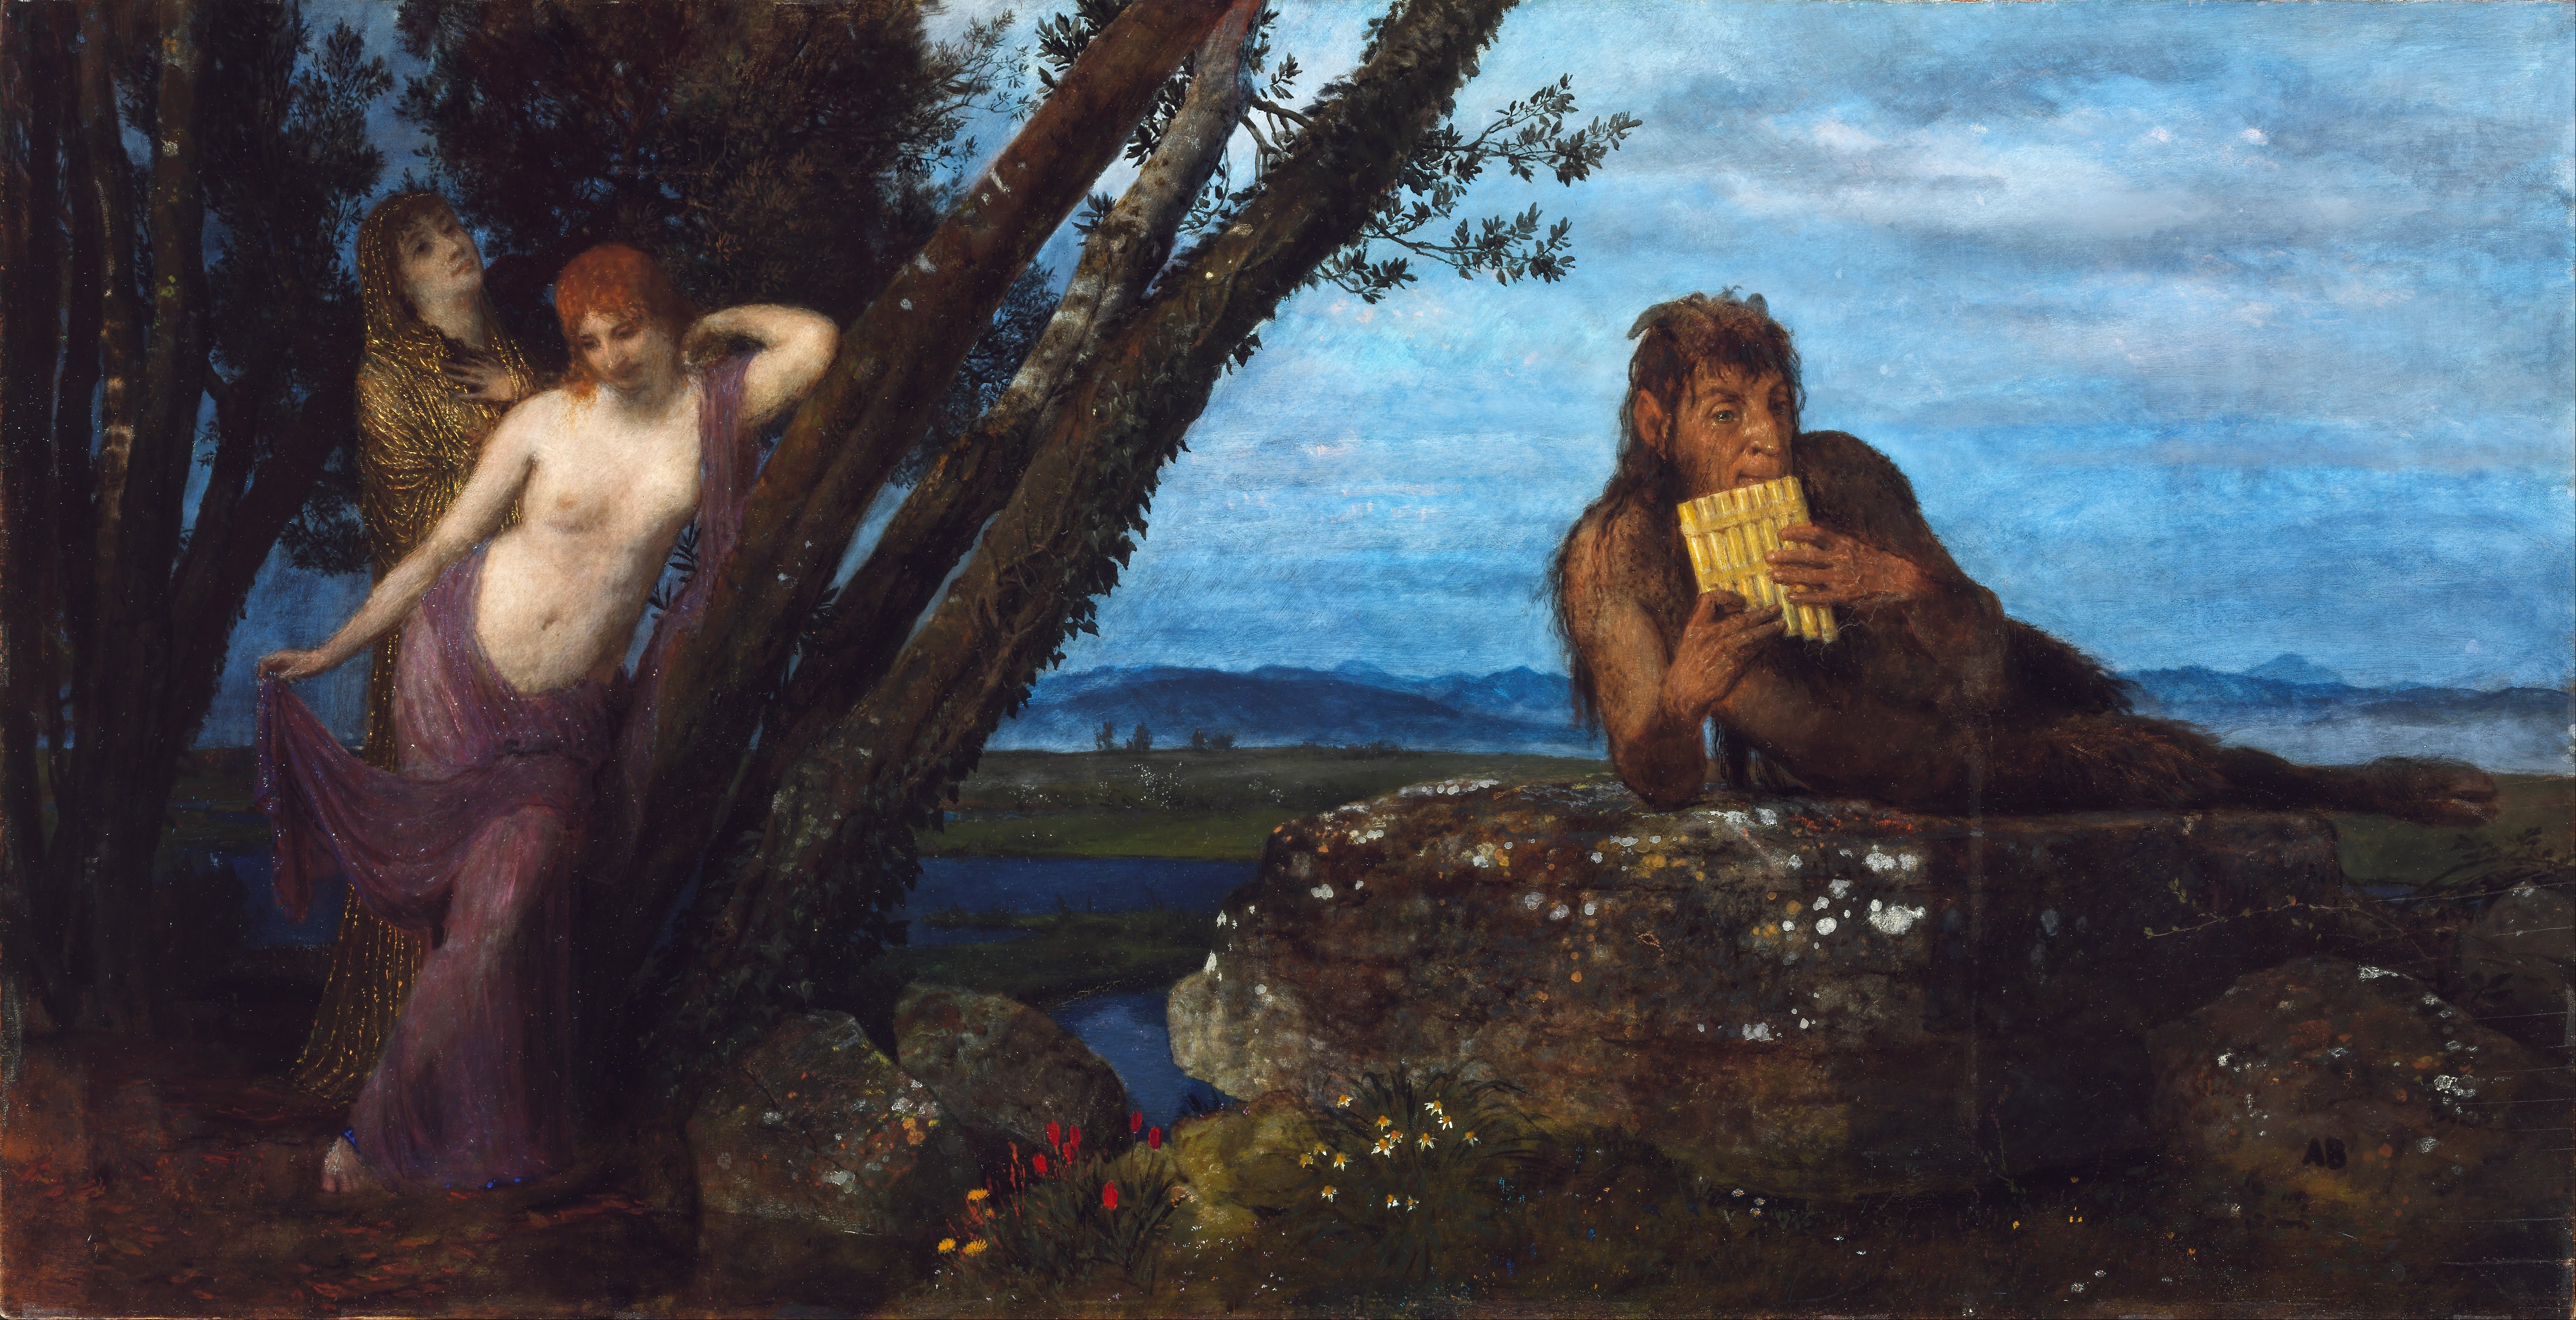 Jarní večer by Arnold Böcklin - 1879 - 67,4 cm x 129,5 cm 